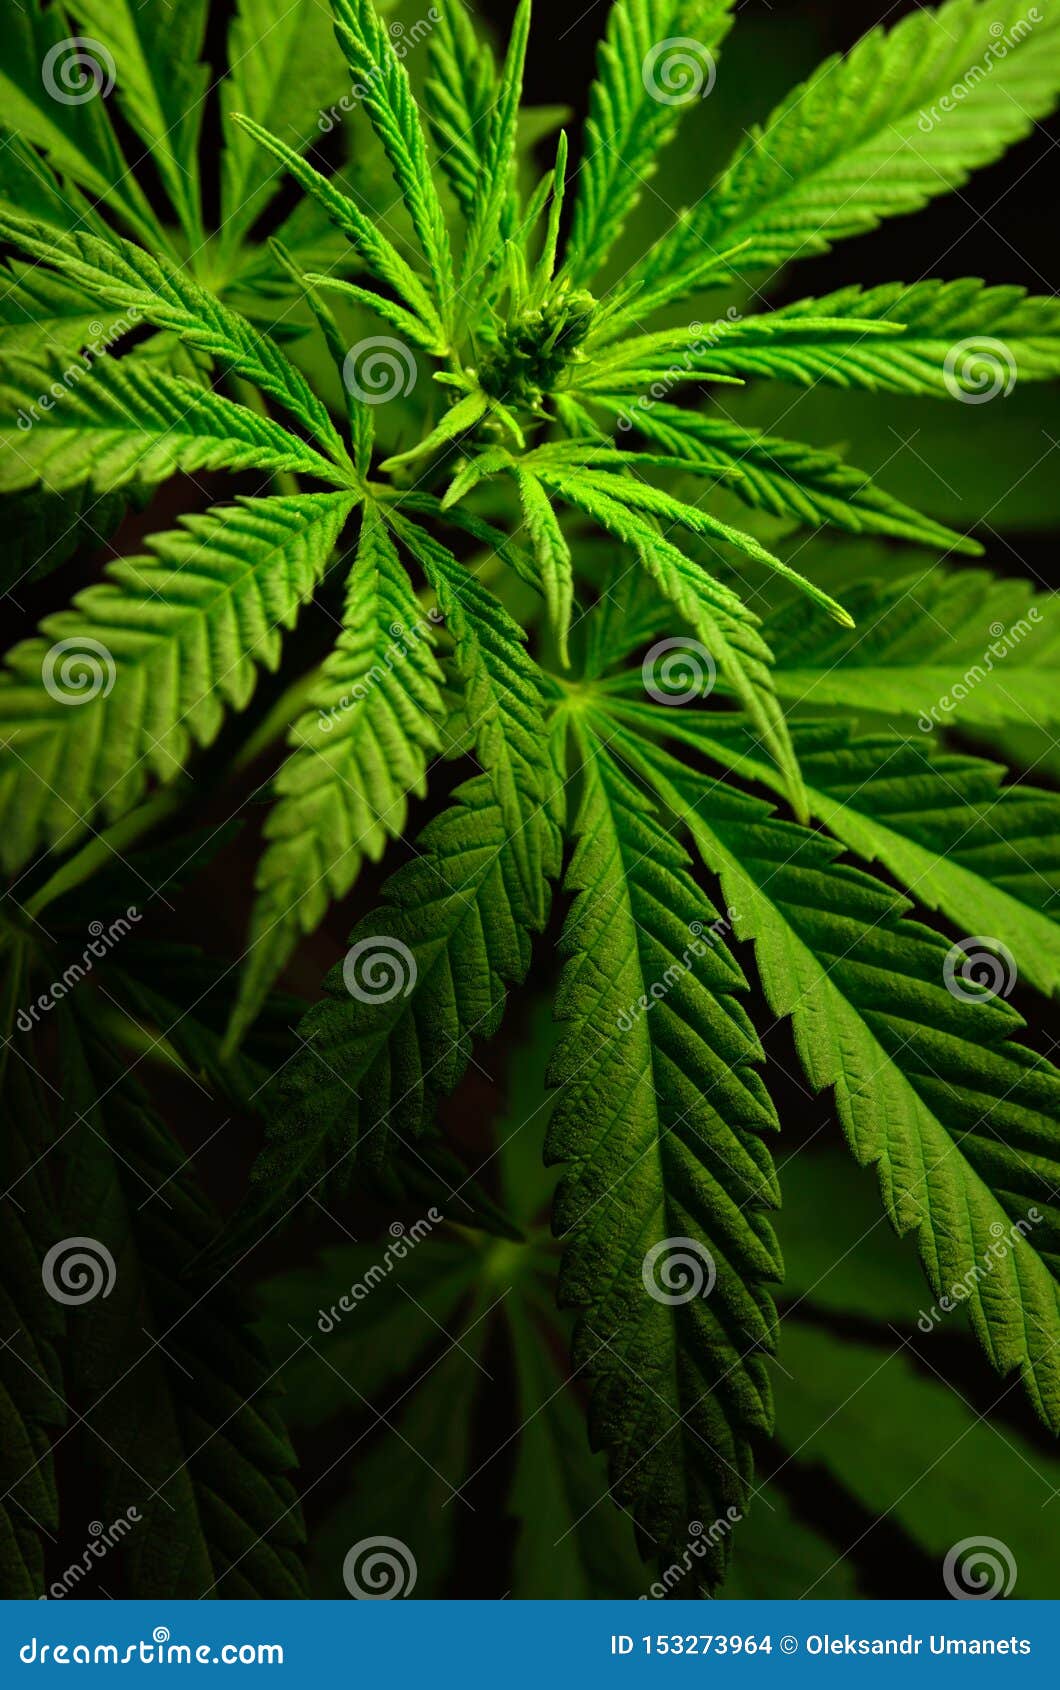 Черные листья марихуаны тор браузер скачать на ipad гидра